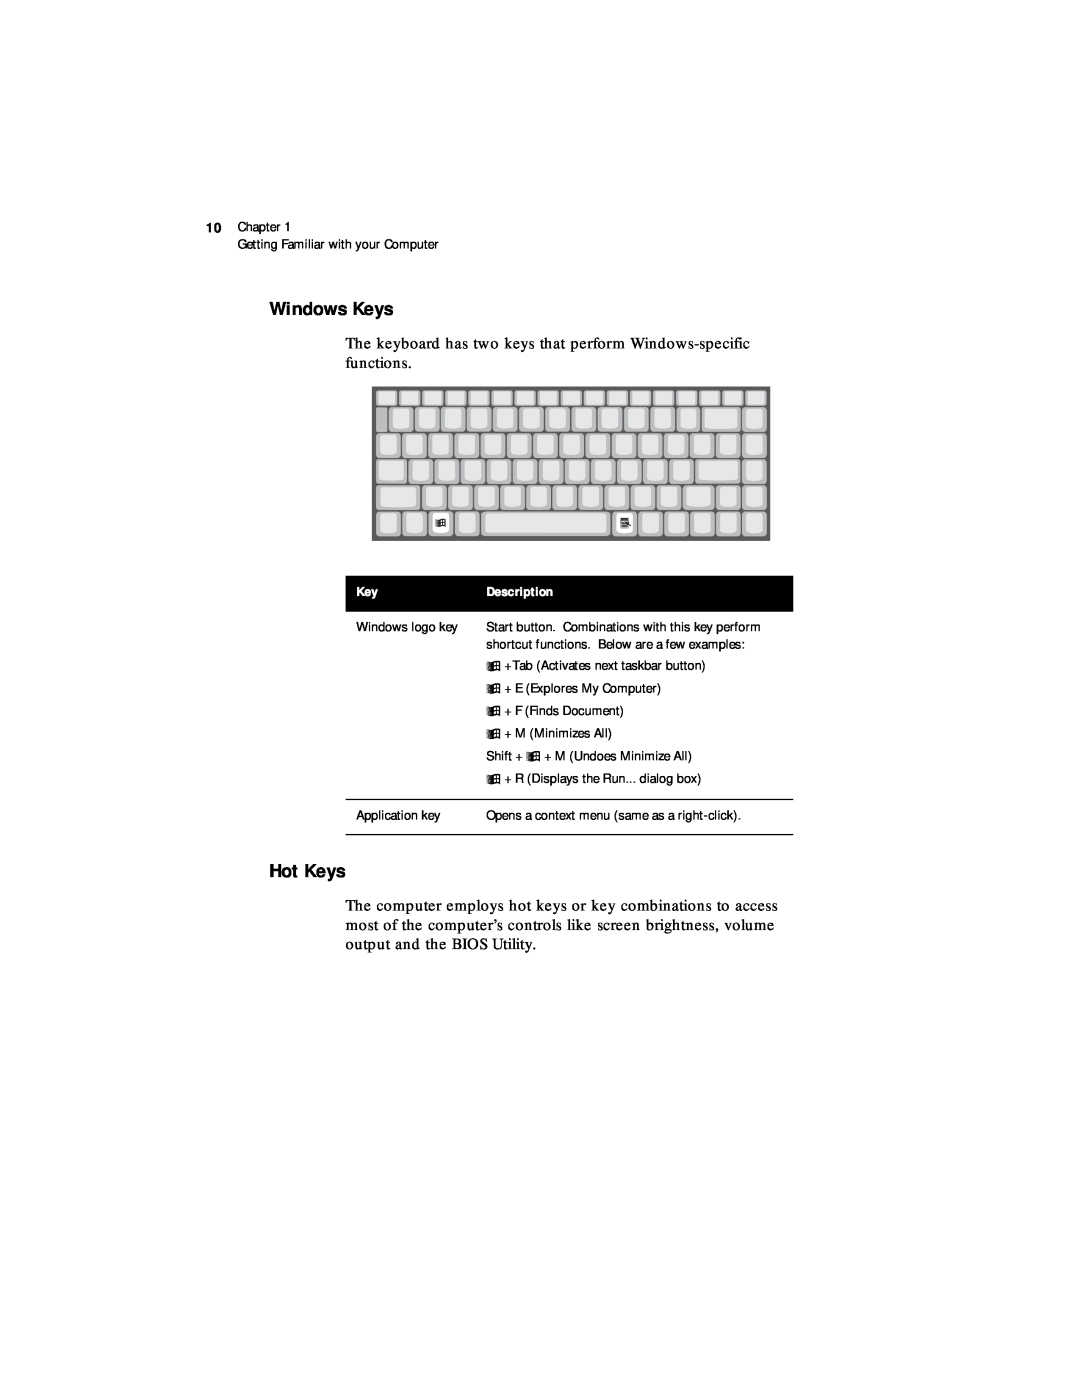 Acer 330 Series manual Windows Keys, Hot Keys 